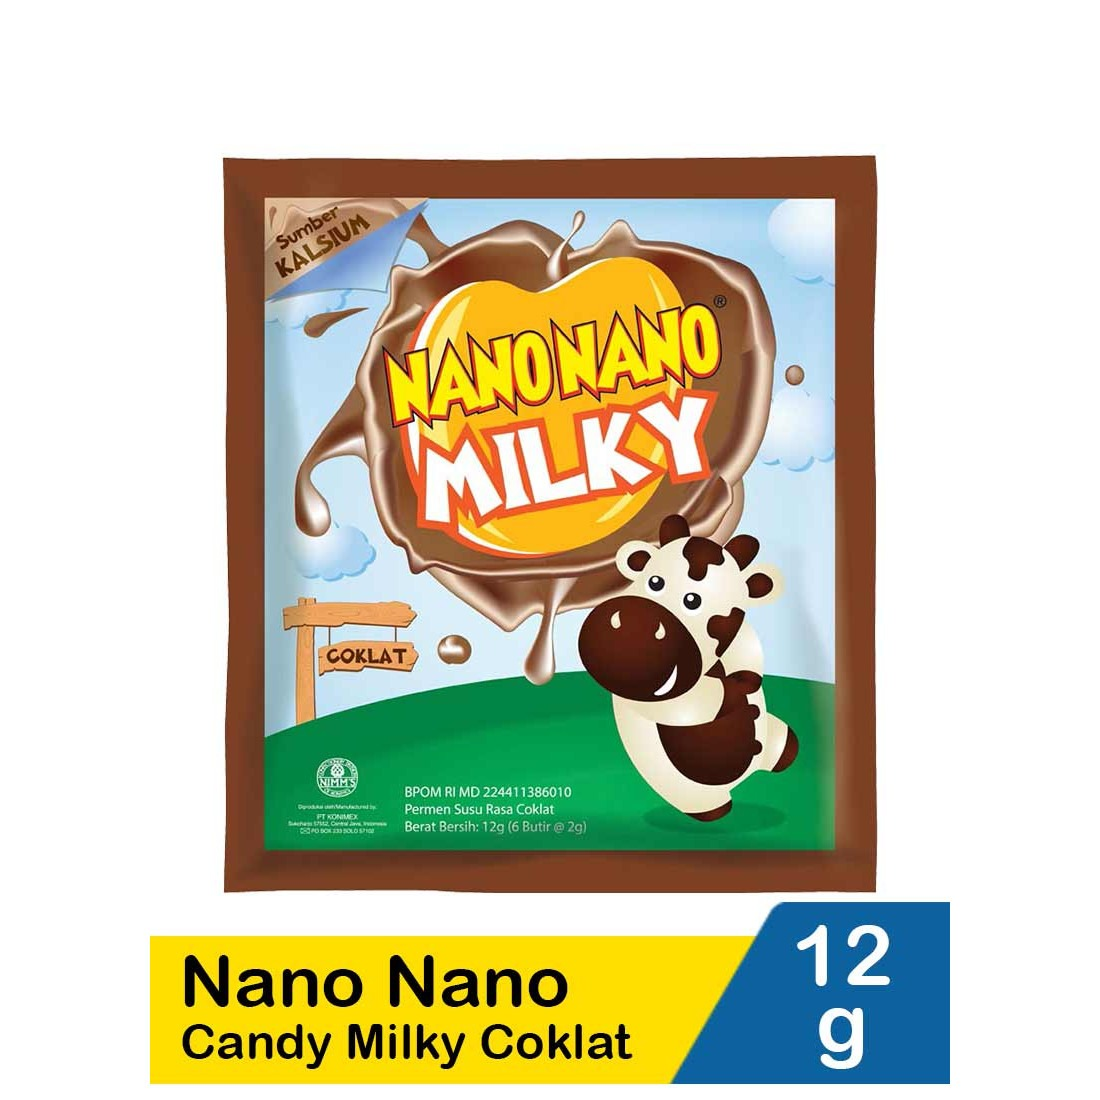 Nano Nano 12G Candy Milky Coklat